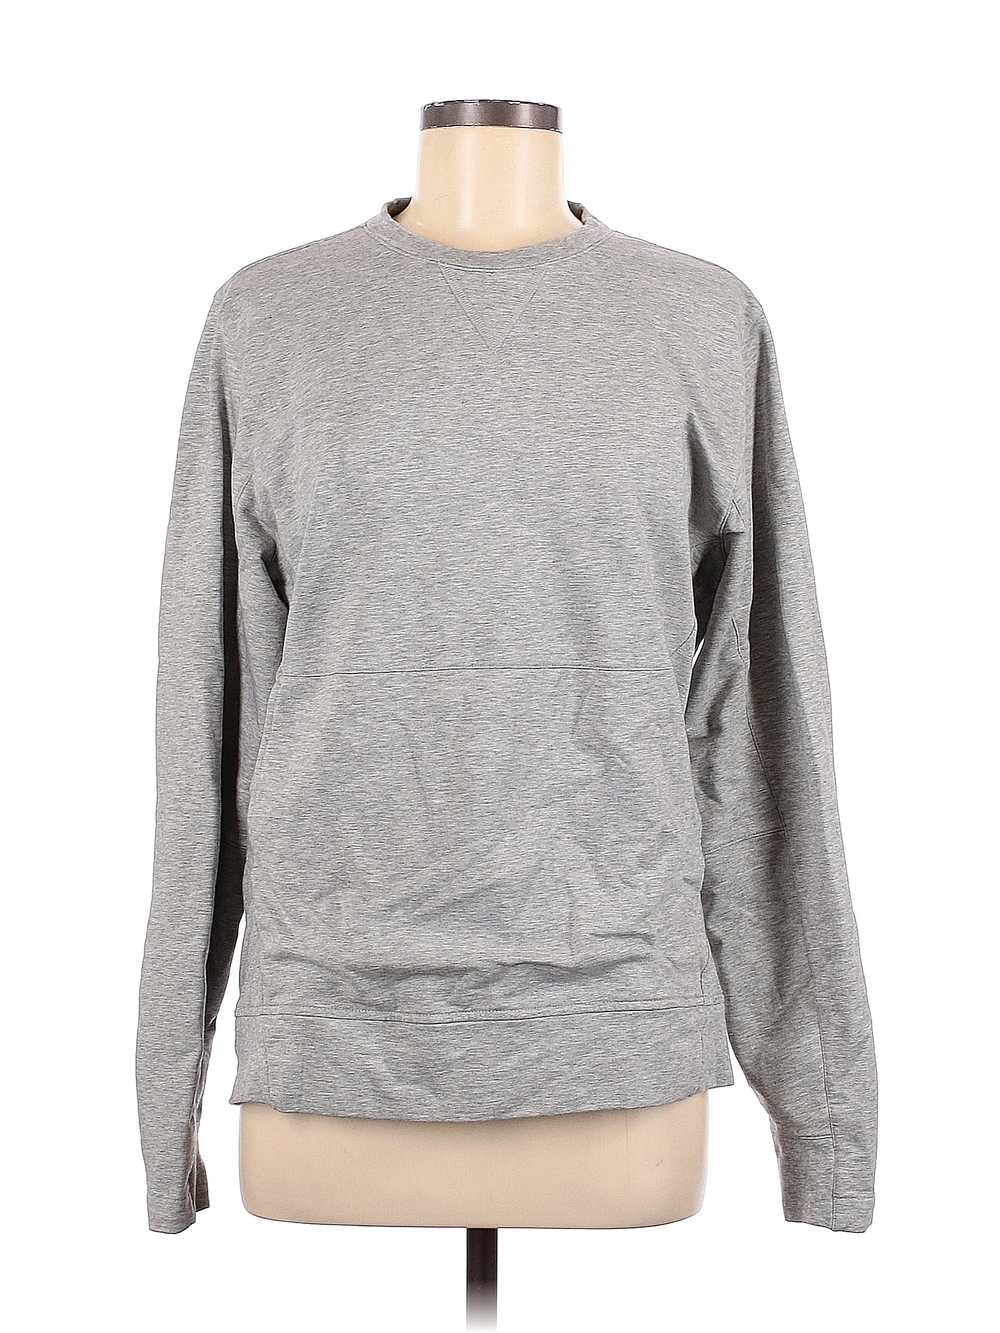 Assorted Brands Women Gray Sweatshirt M - image 1